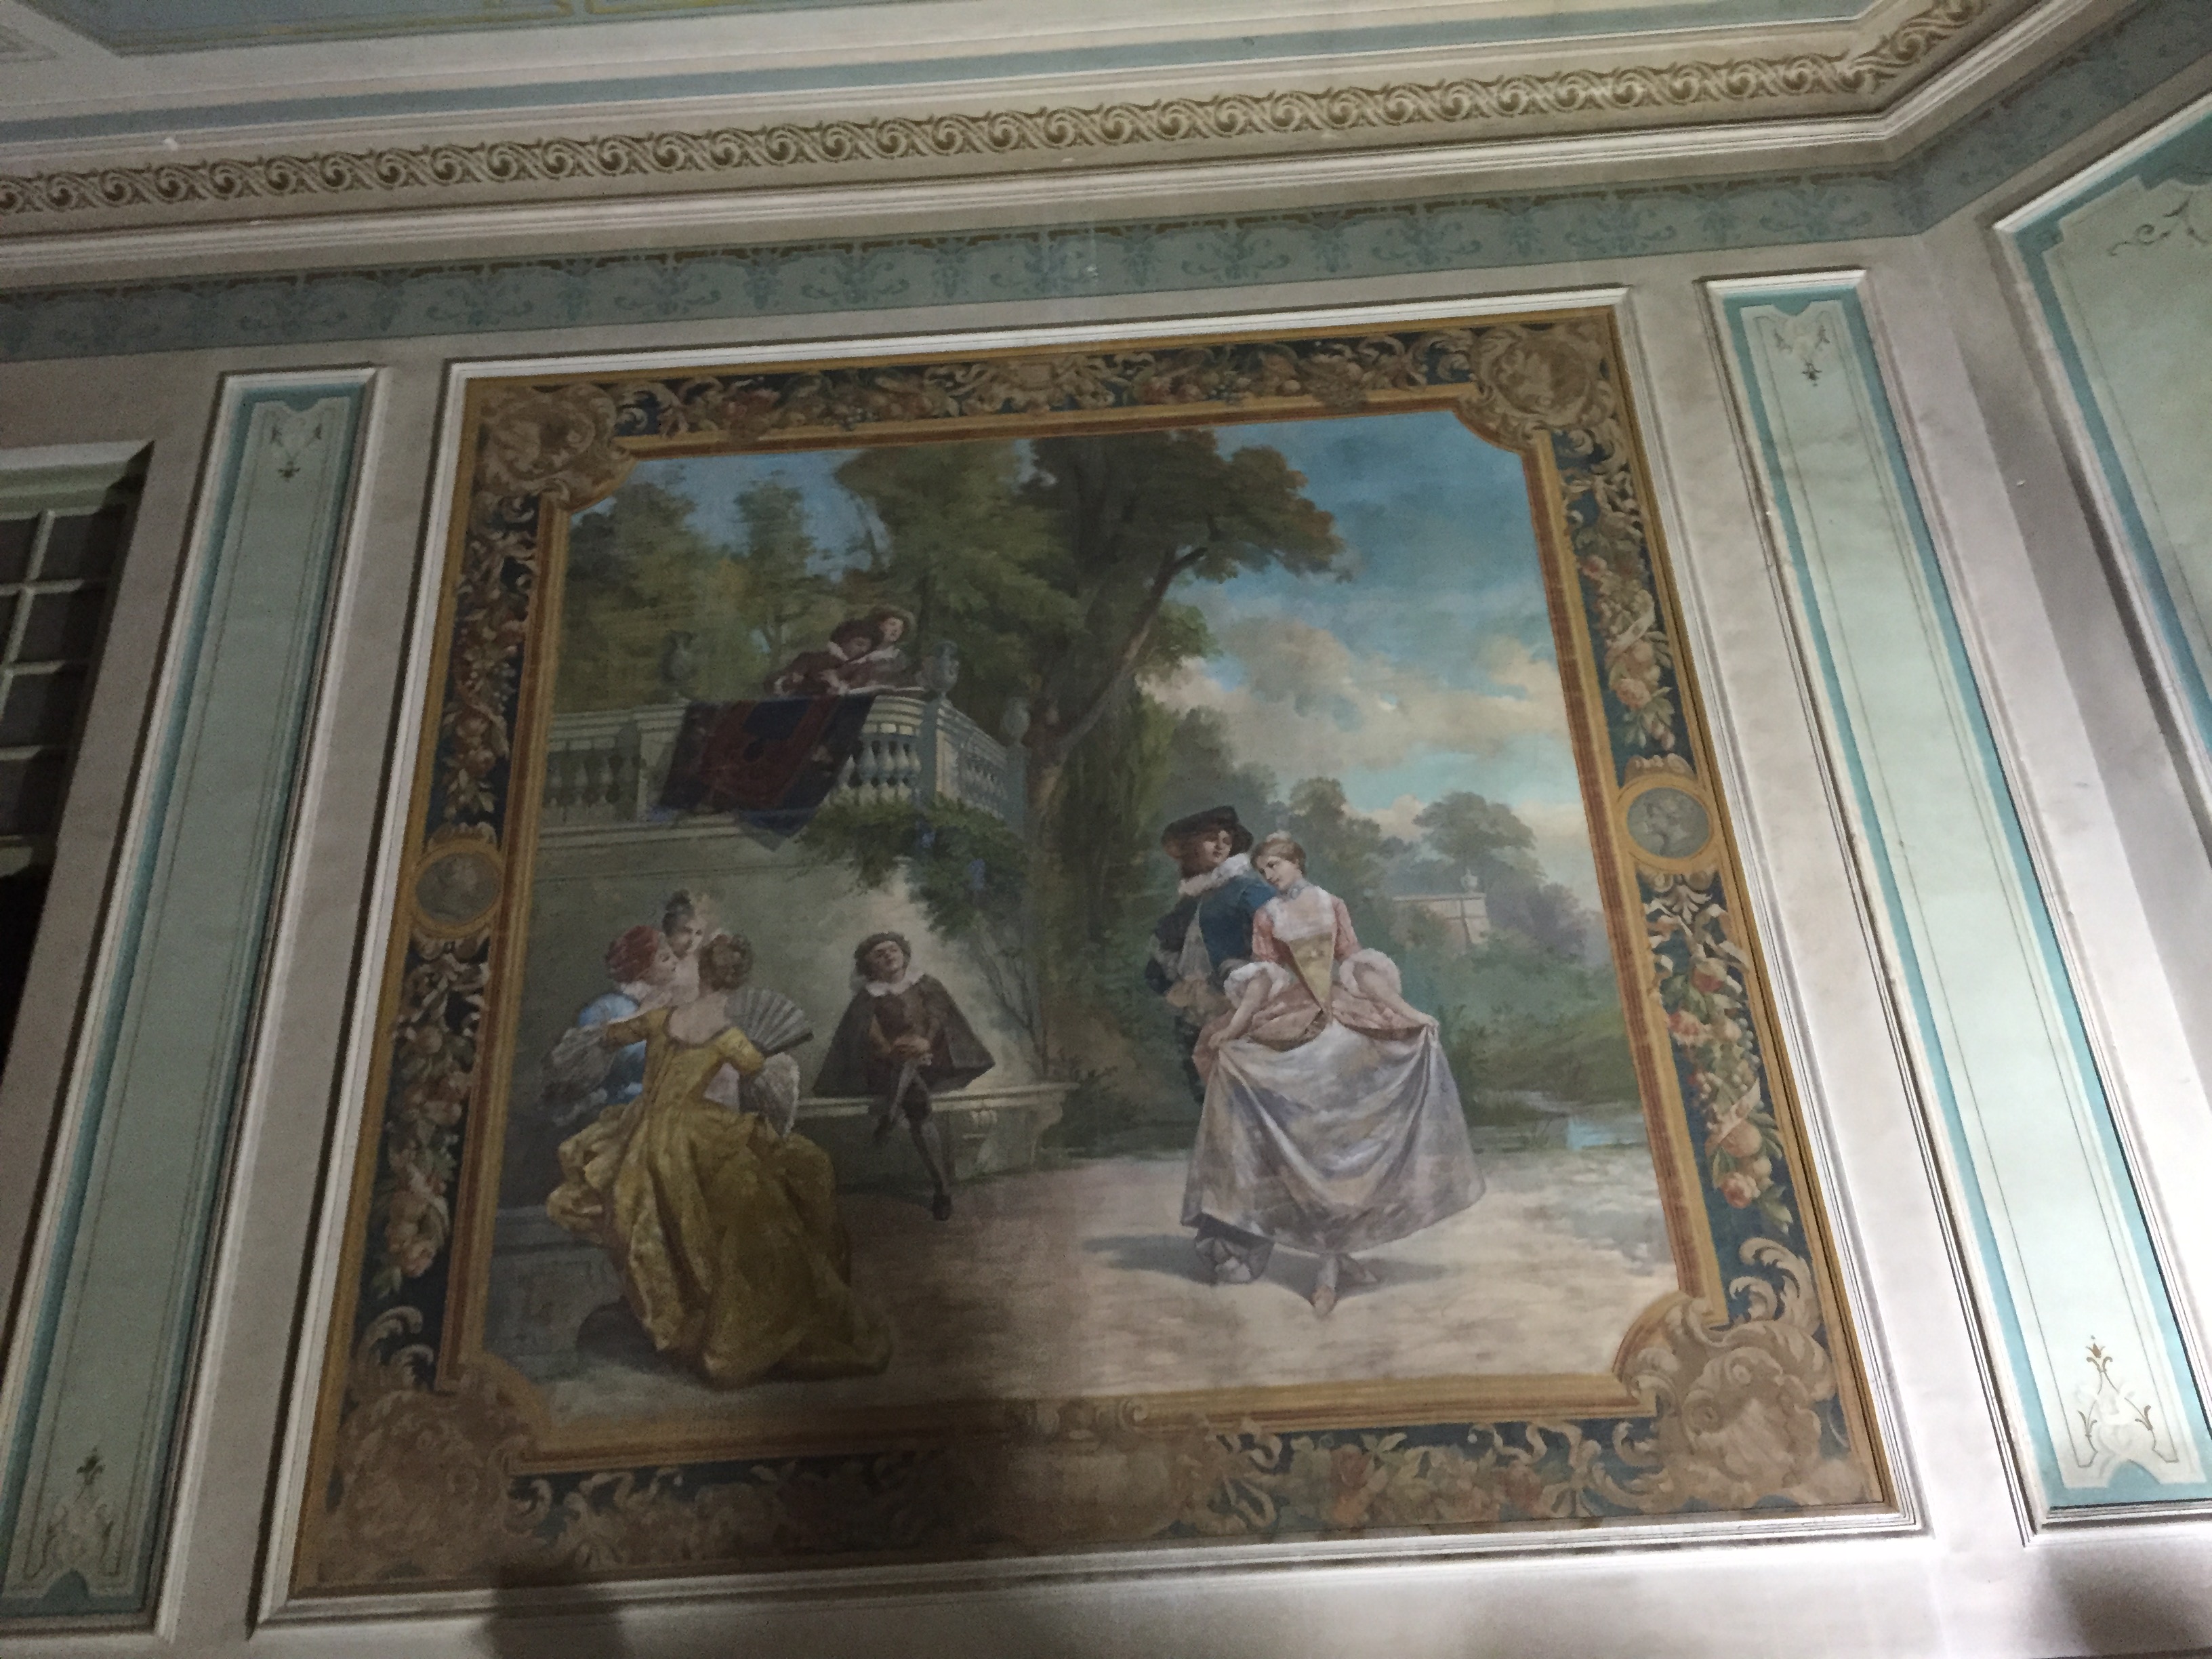 بعض اللوحات الفنية داخل القصر 